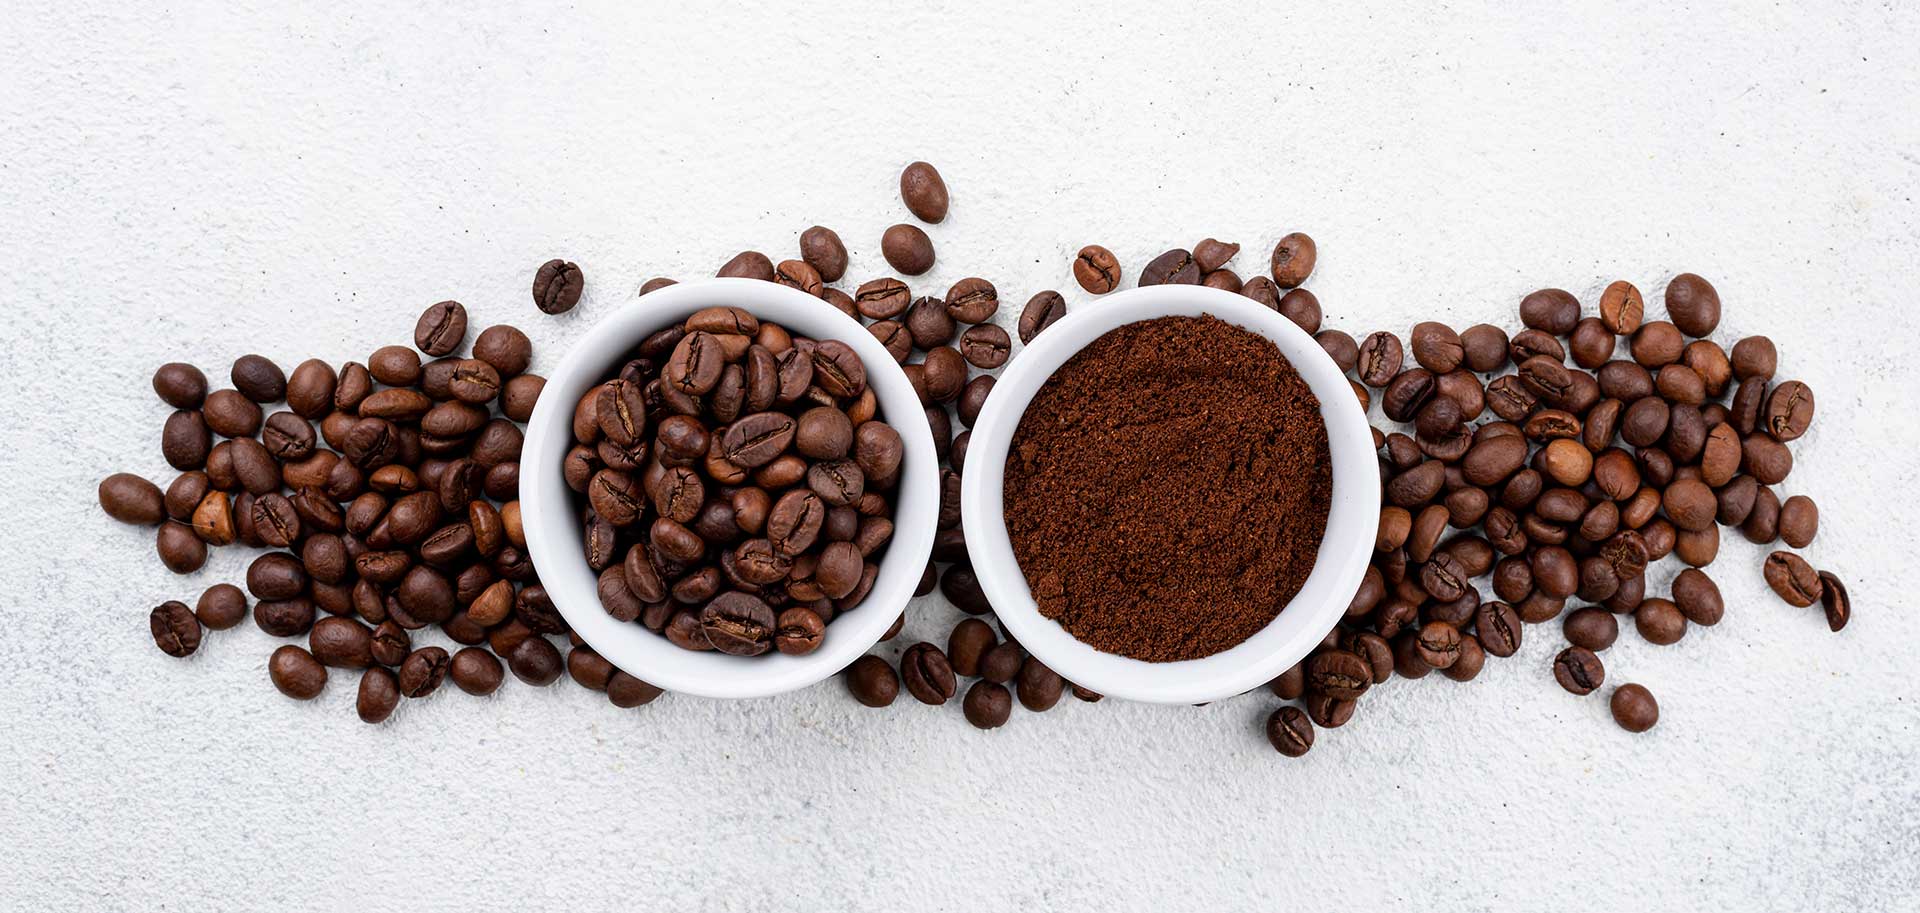 เลือกกาแฟแบบเมล็ดหรือกาแฟแบบคั่วบดดีกว่ากัน กาแฟเมล็ดหรือกาแฟบด